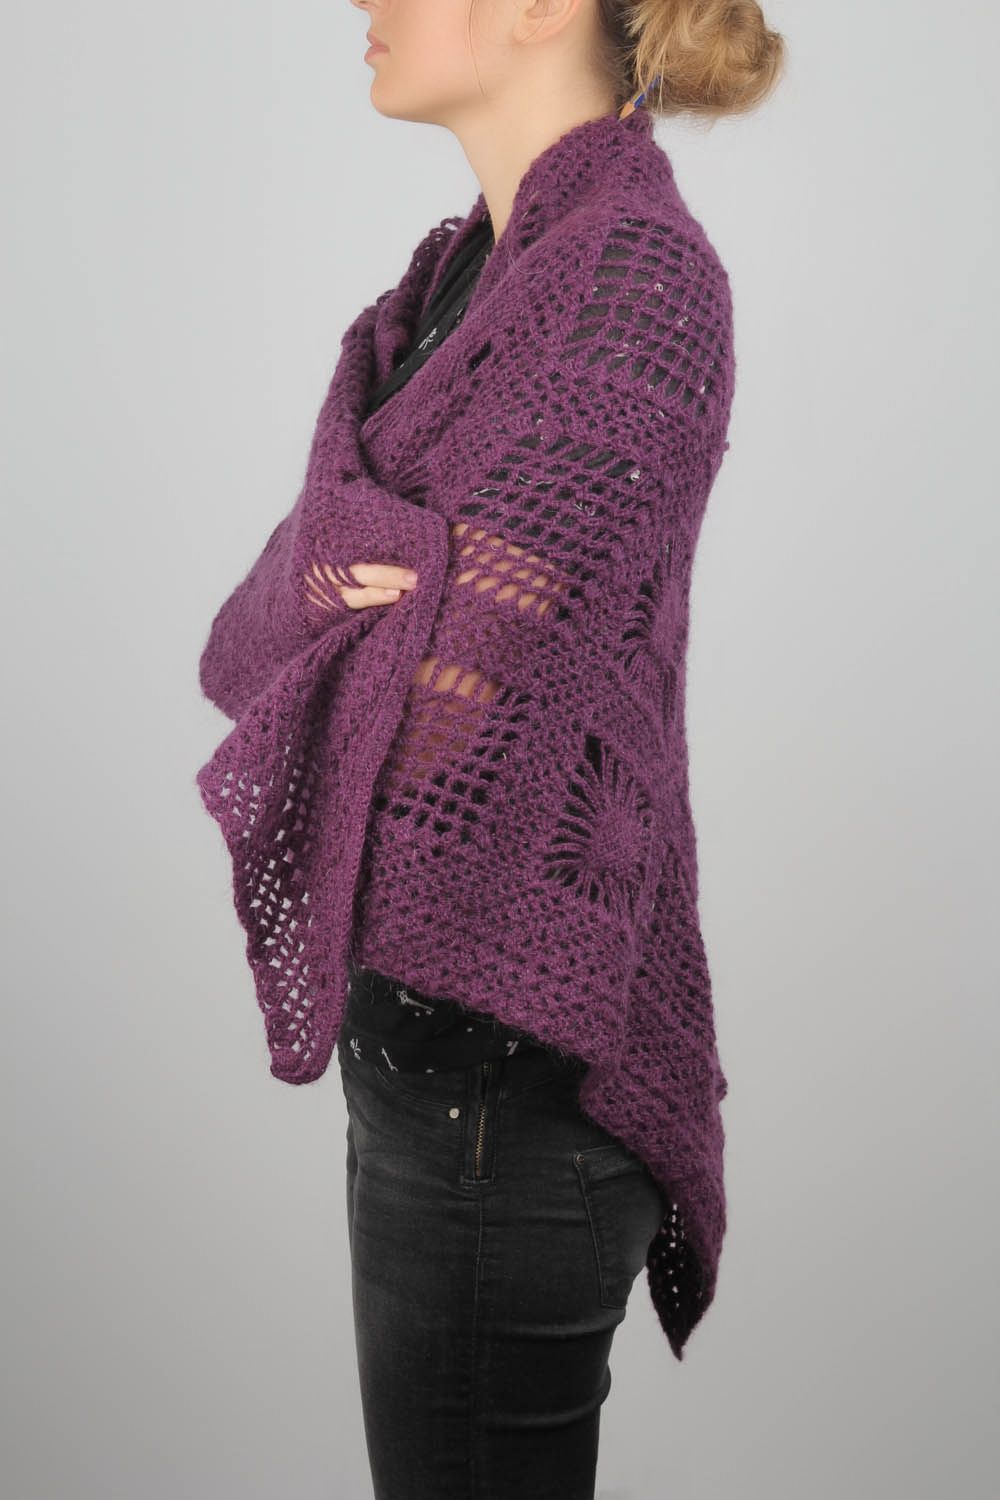 Chal de lana violeta foto 5